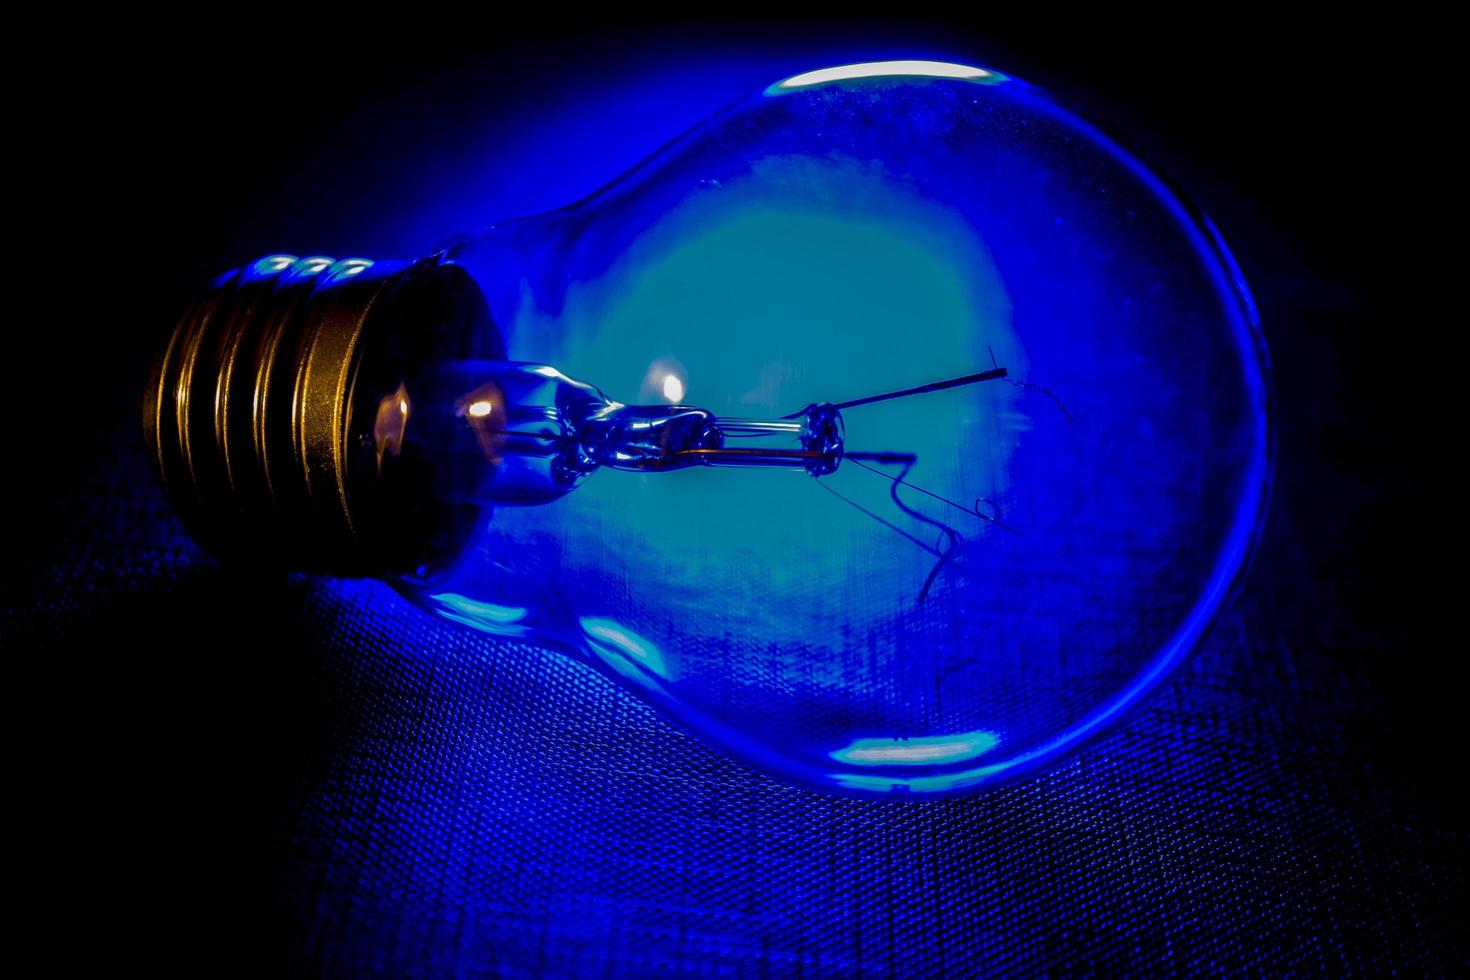 bombilla única iluminada desde atrás con luz azul foto